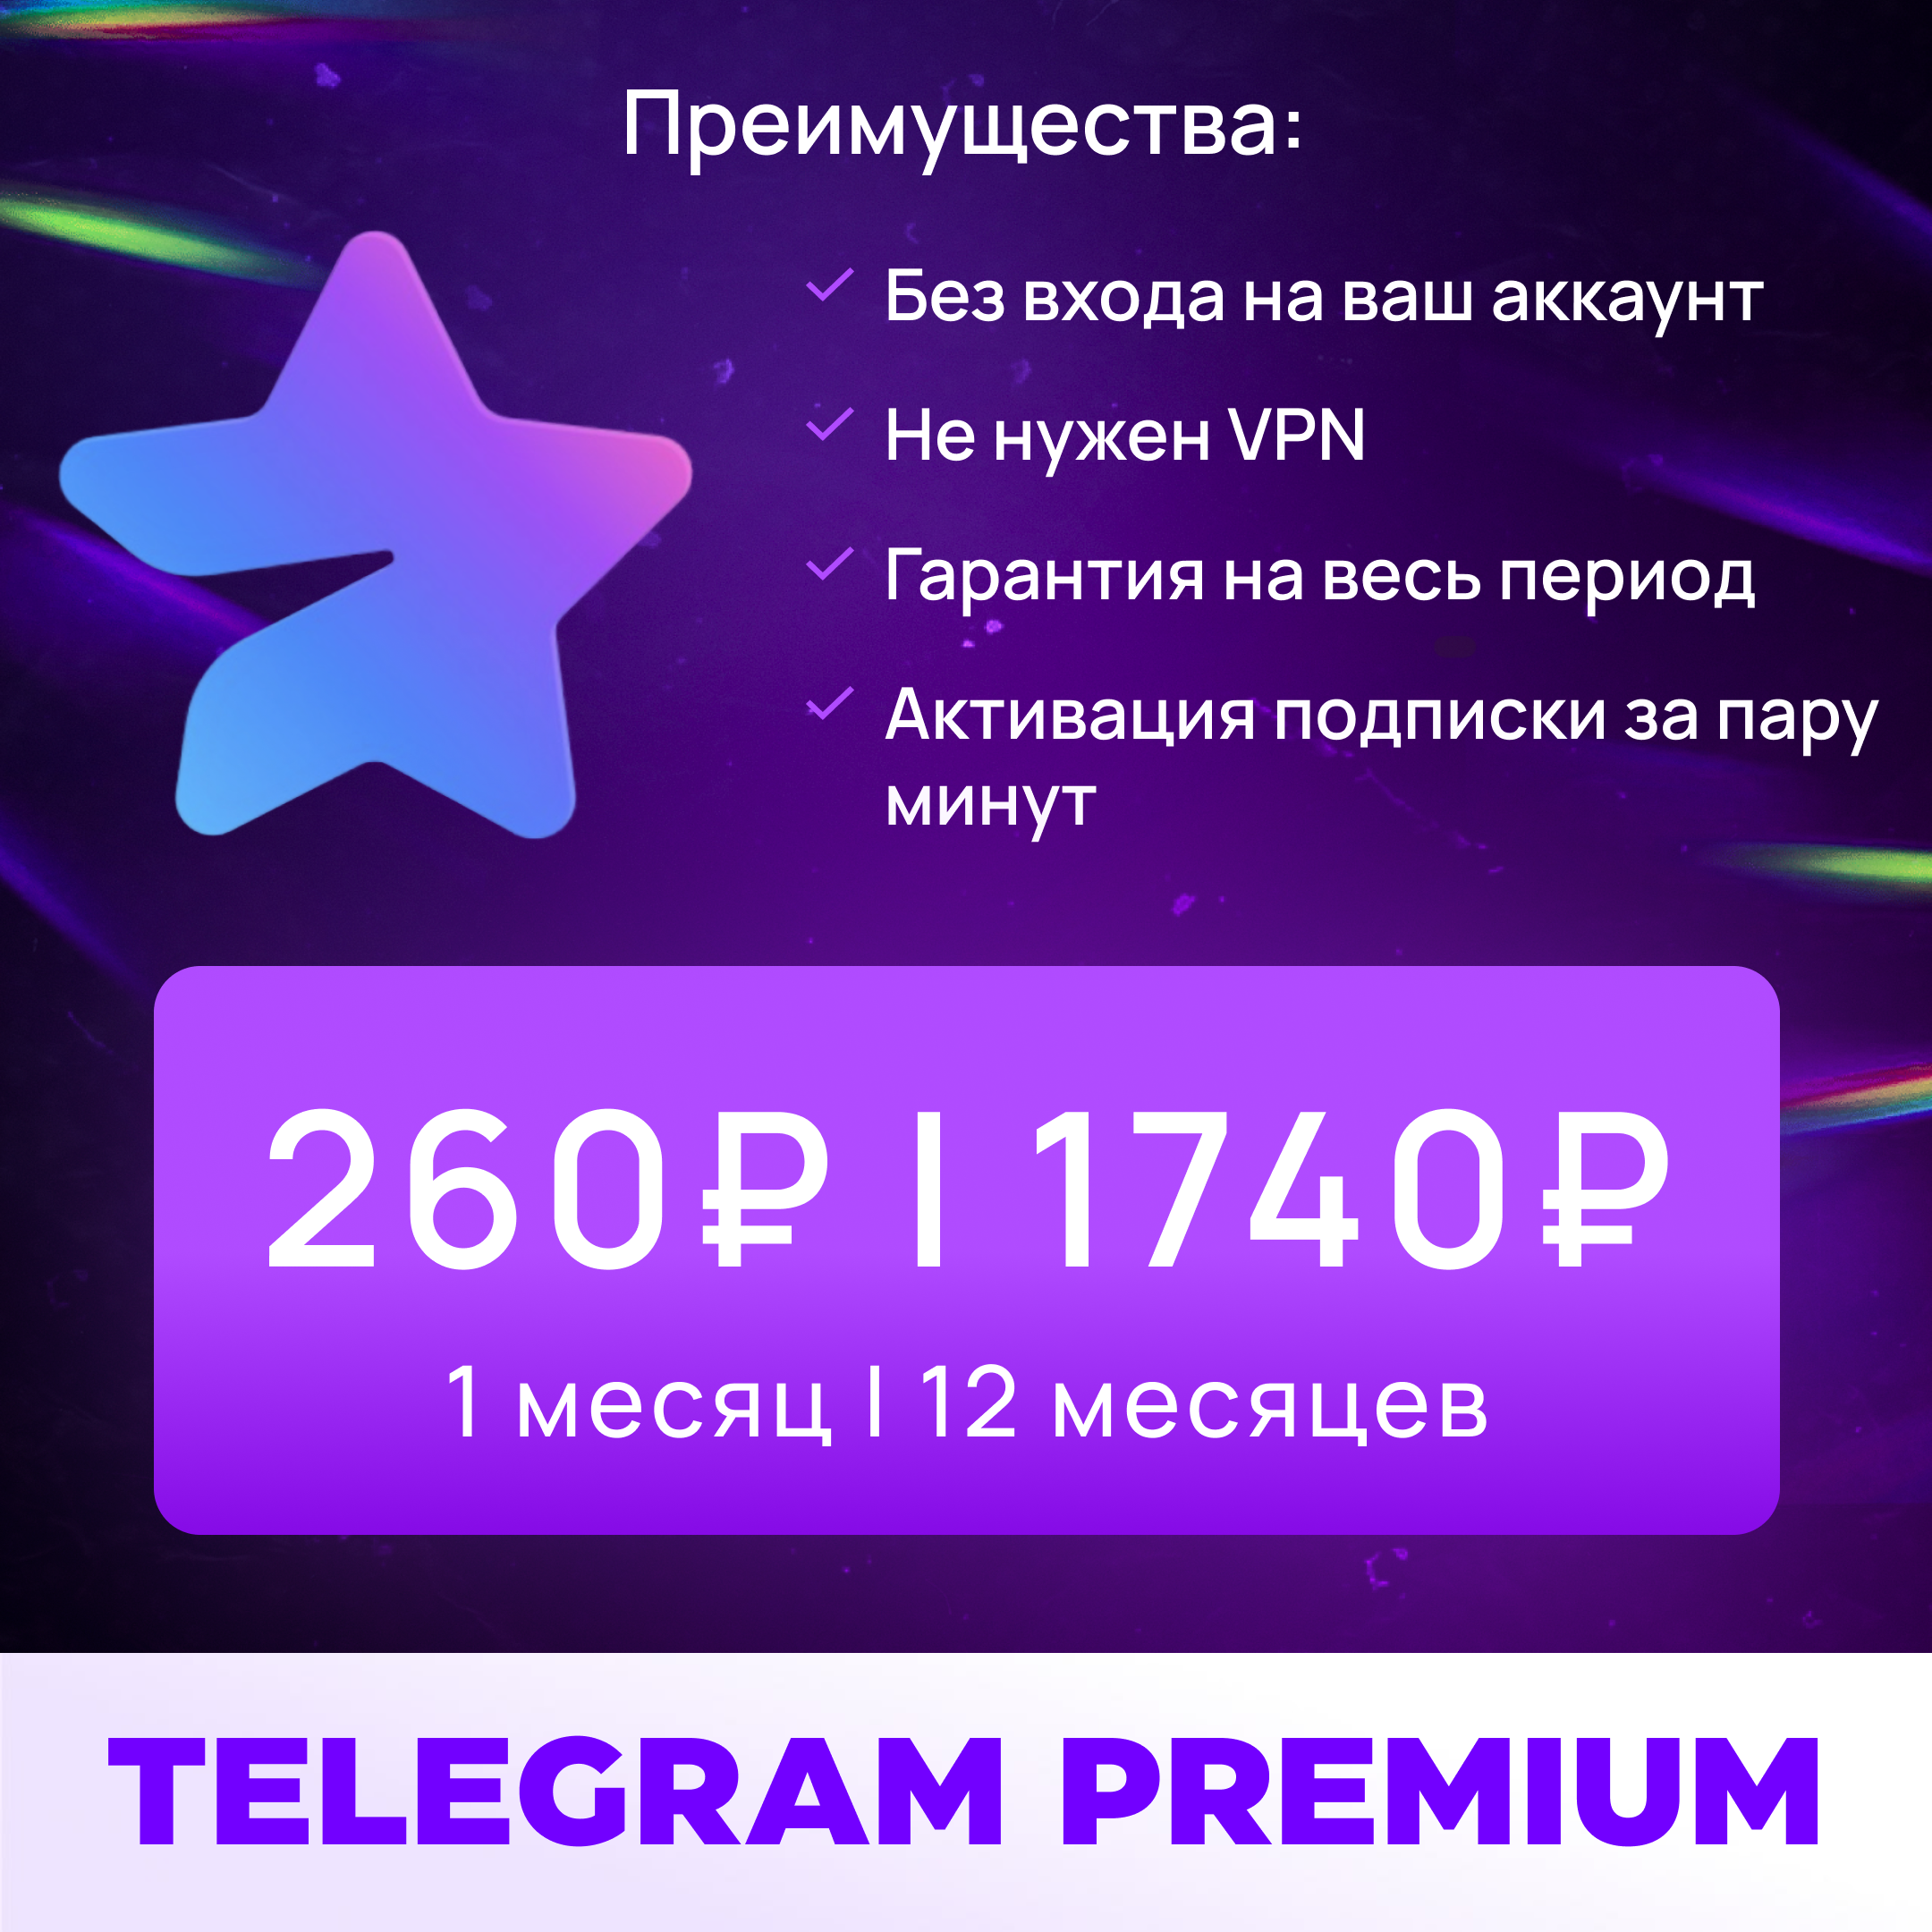 Телеграмм премиум скачать бесплатно андроид 2023 фото 98